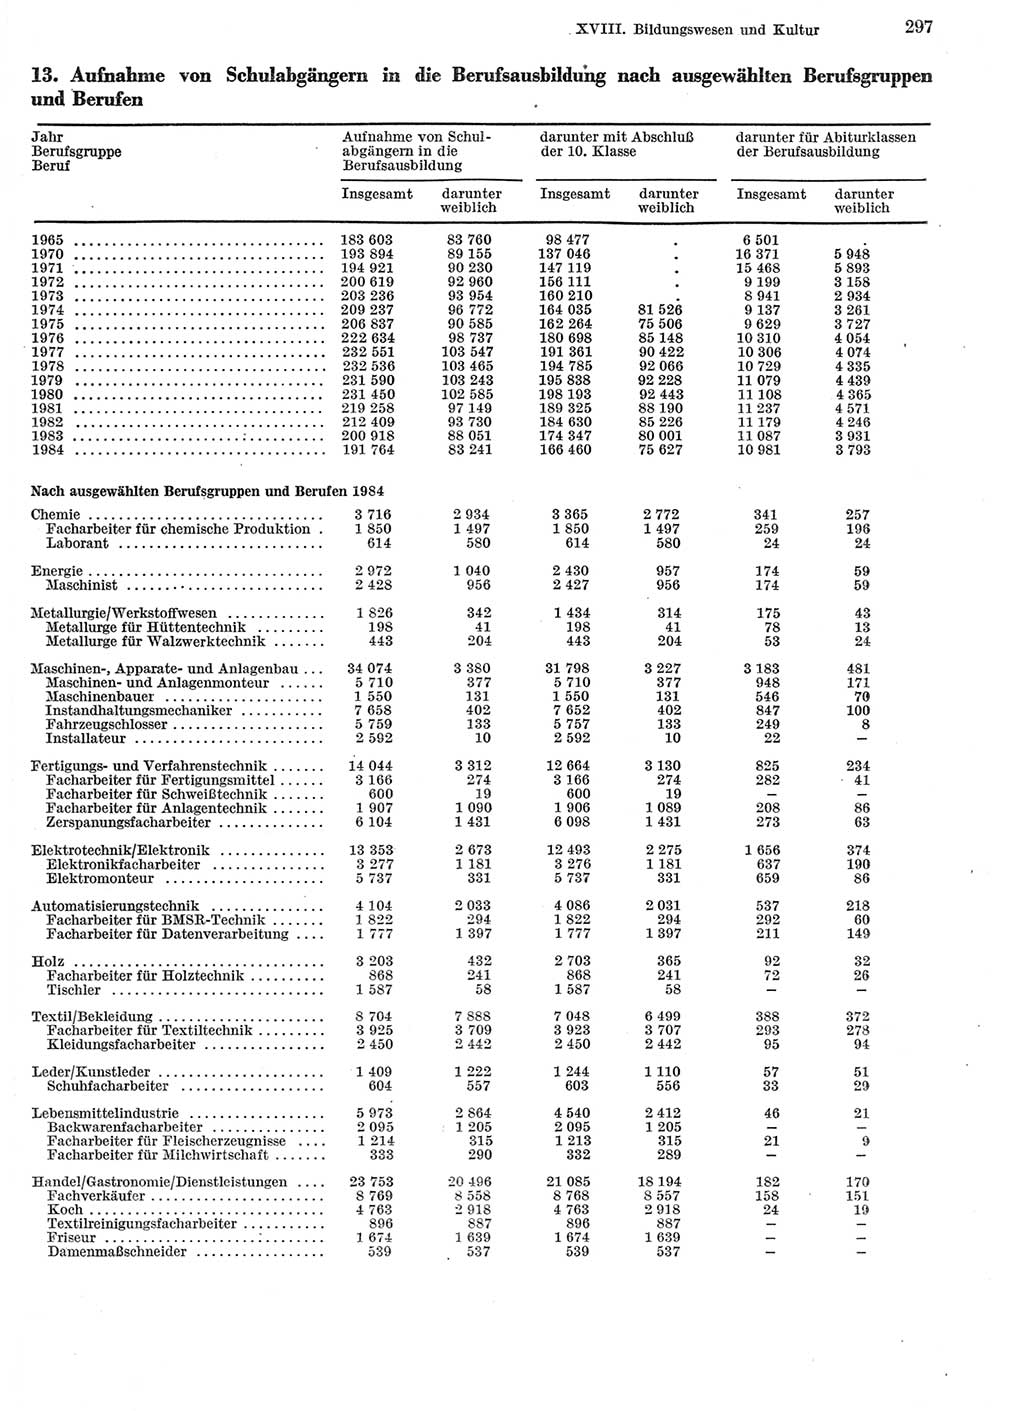 Statistisches Jahrbuch der Deutschen Demokratischen Republik (DDR) 1985, Seite 297 (Stat. Jb. DDR 1985, S. 297)